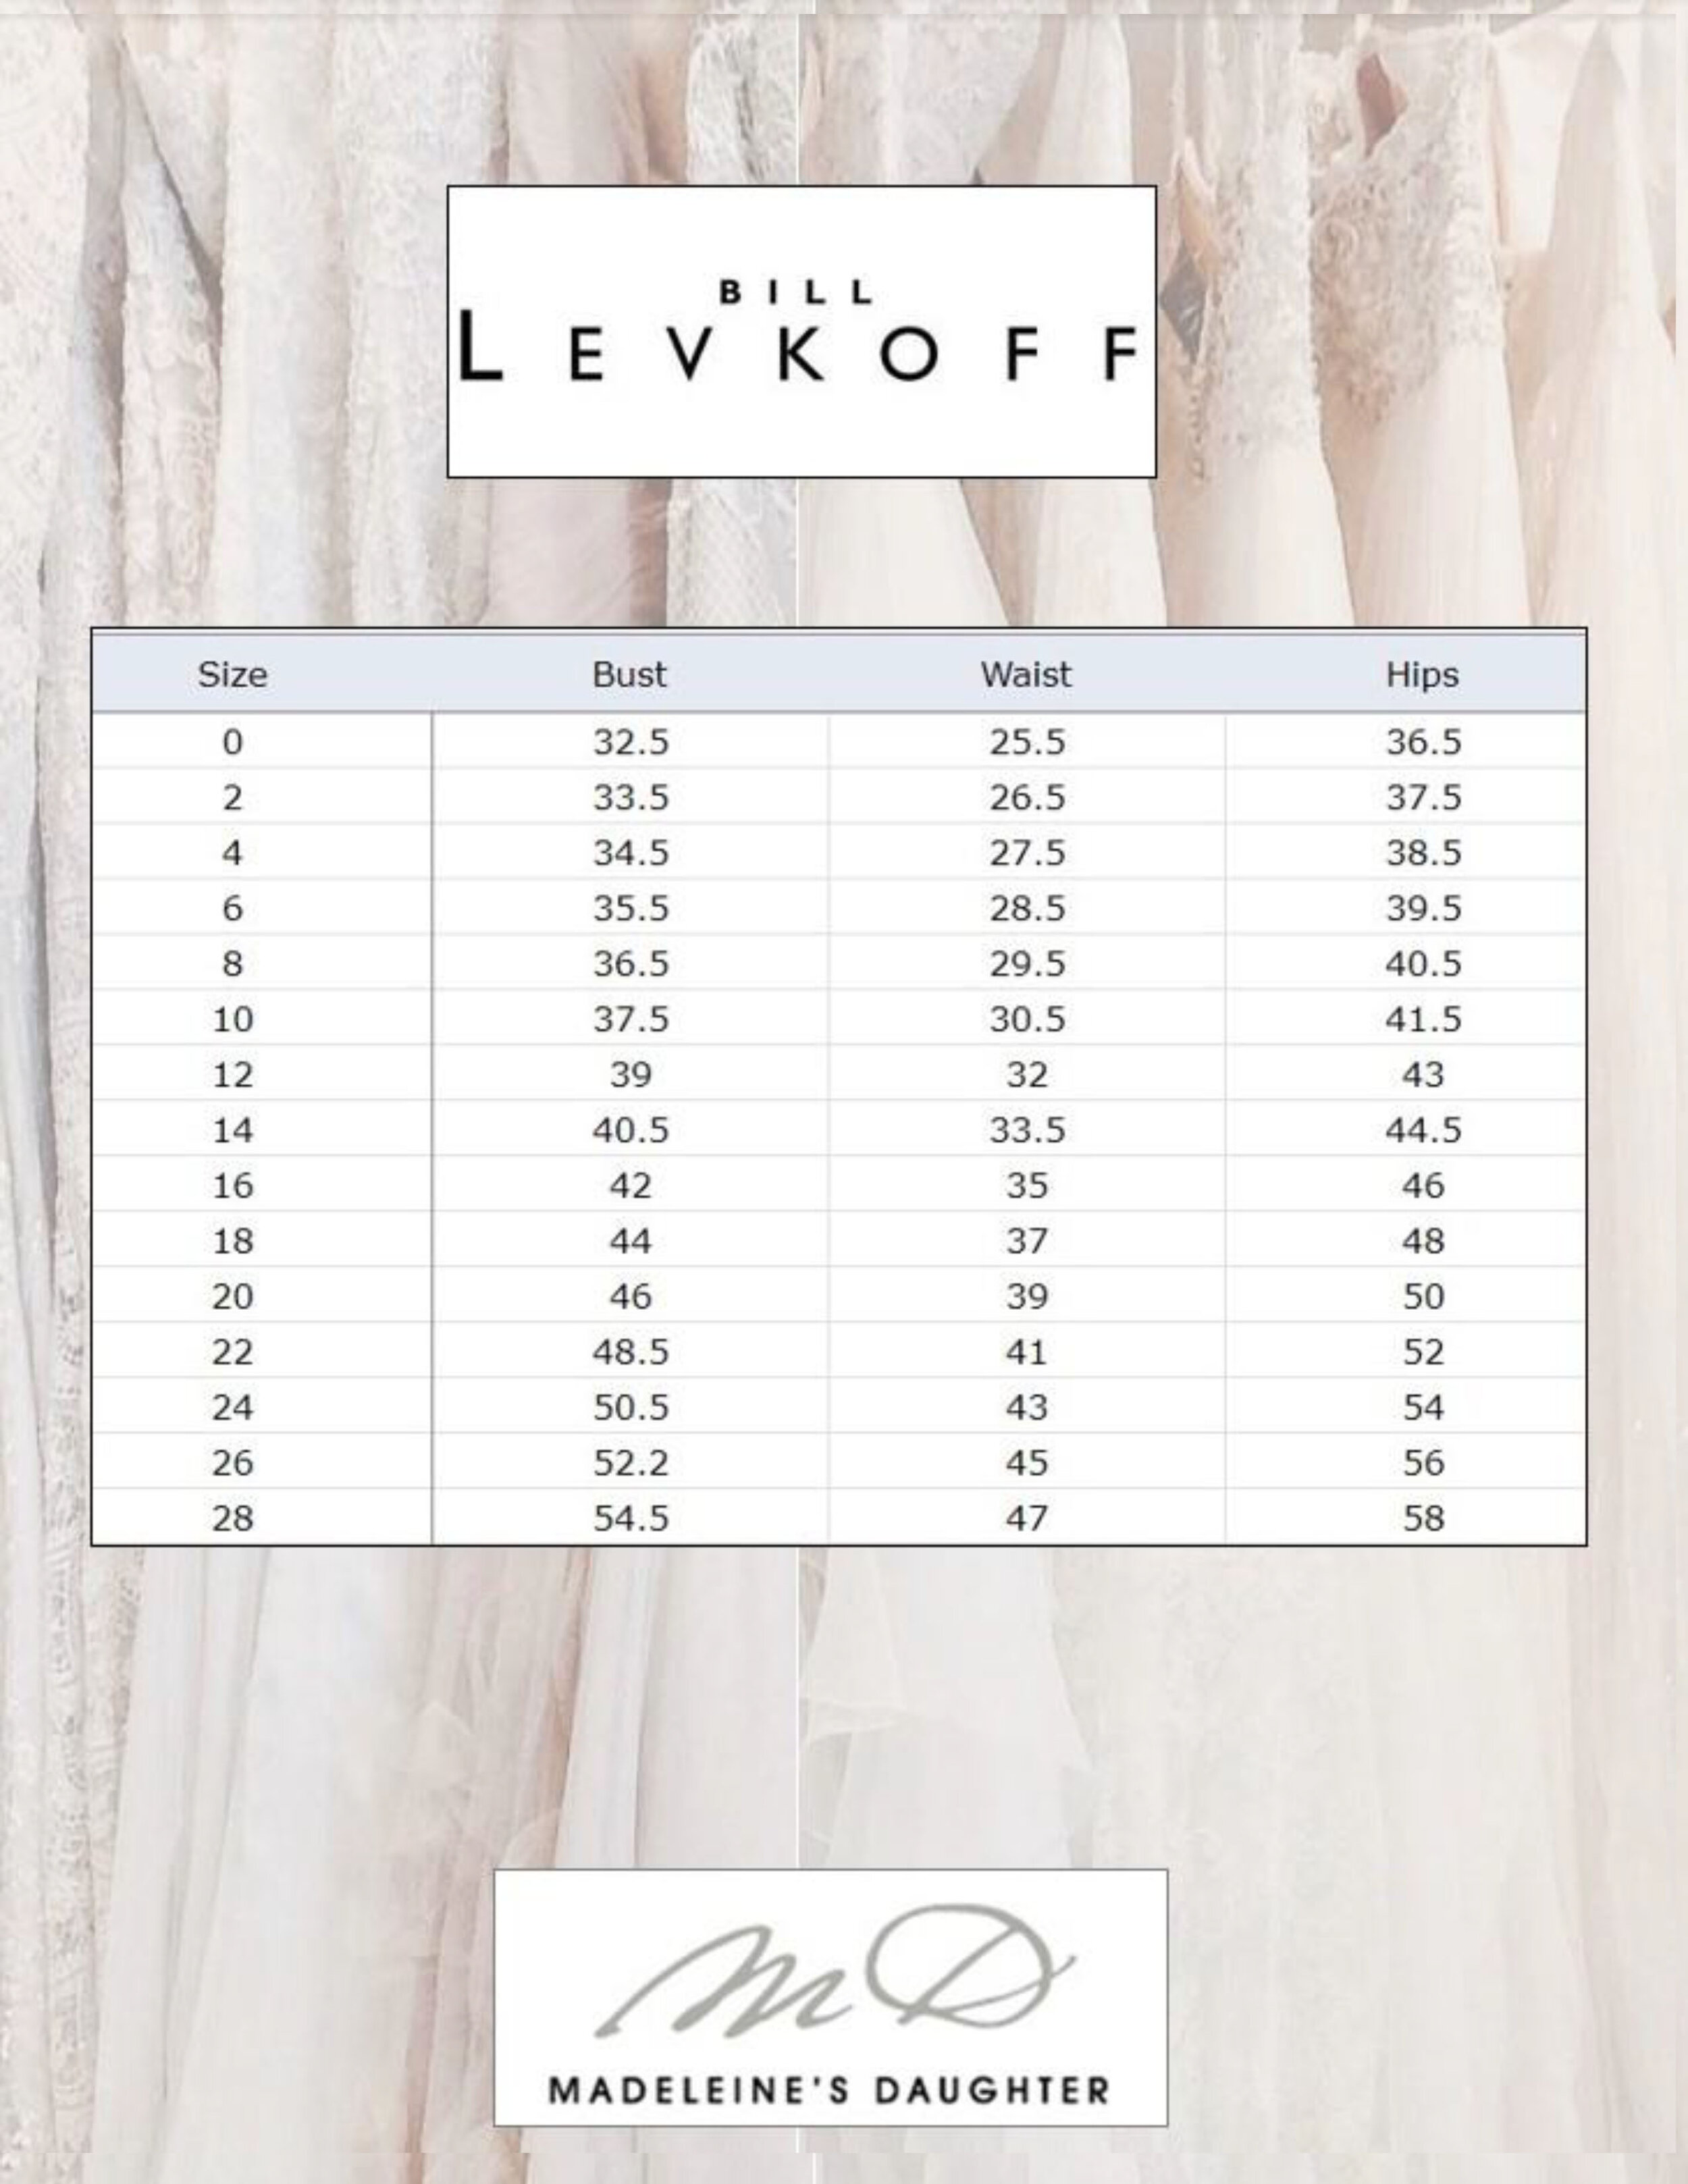 Bill Levkoff Size Chart